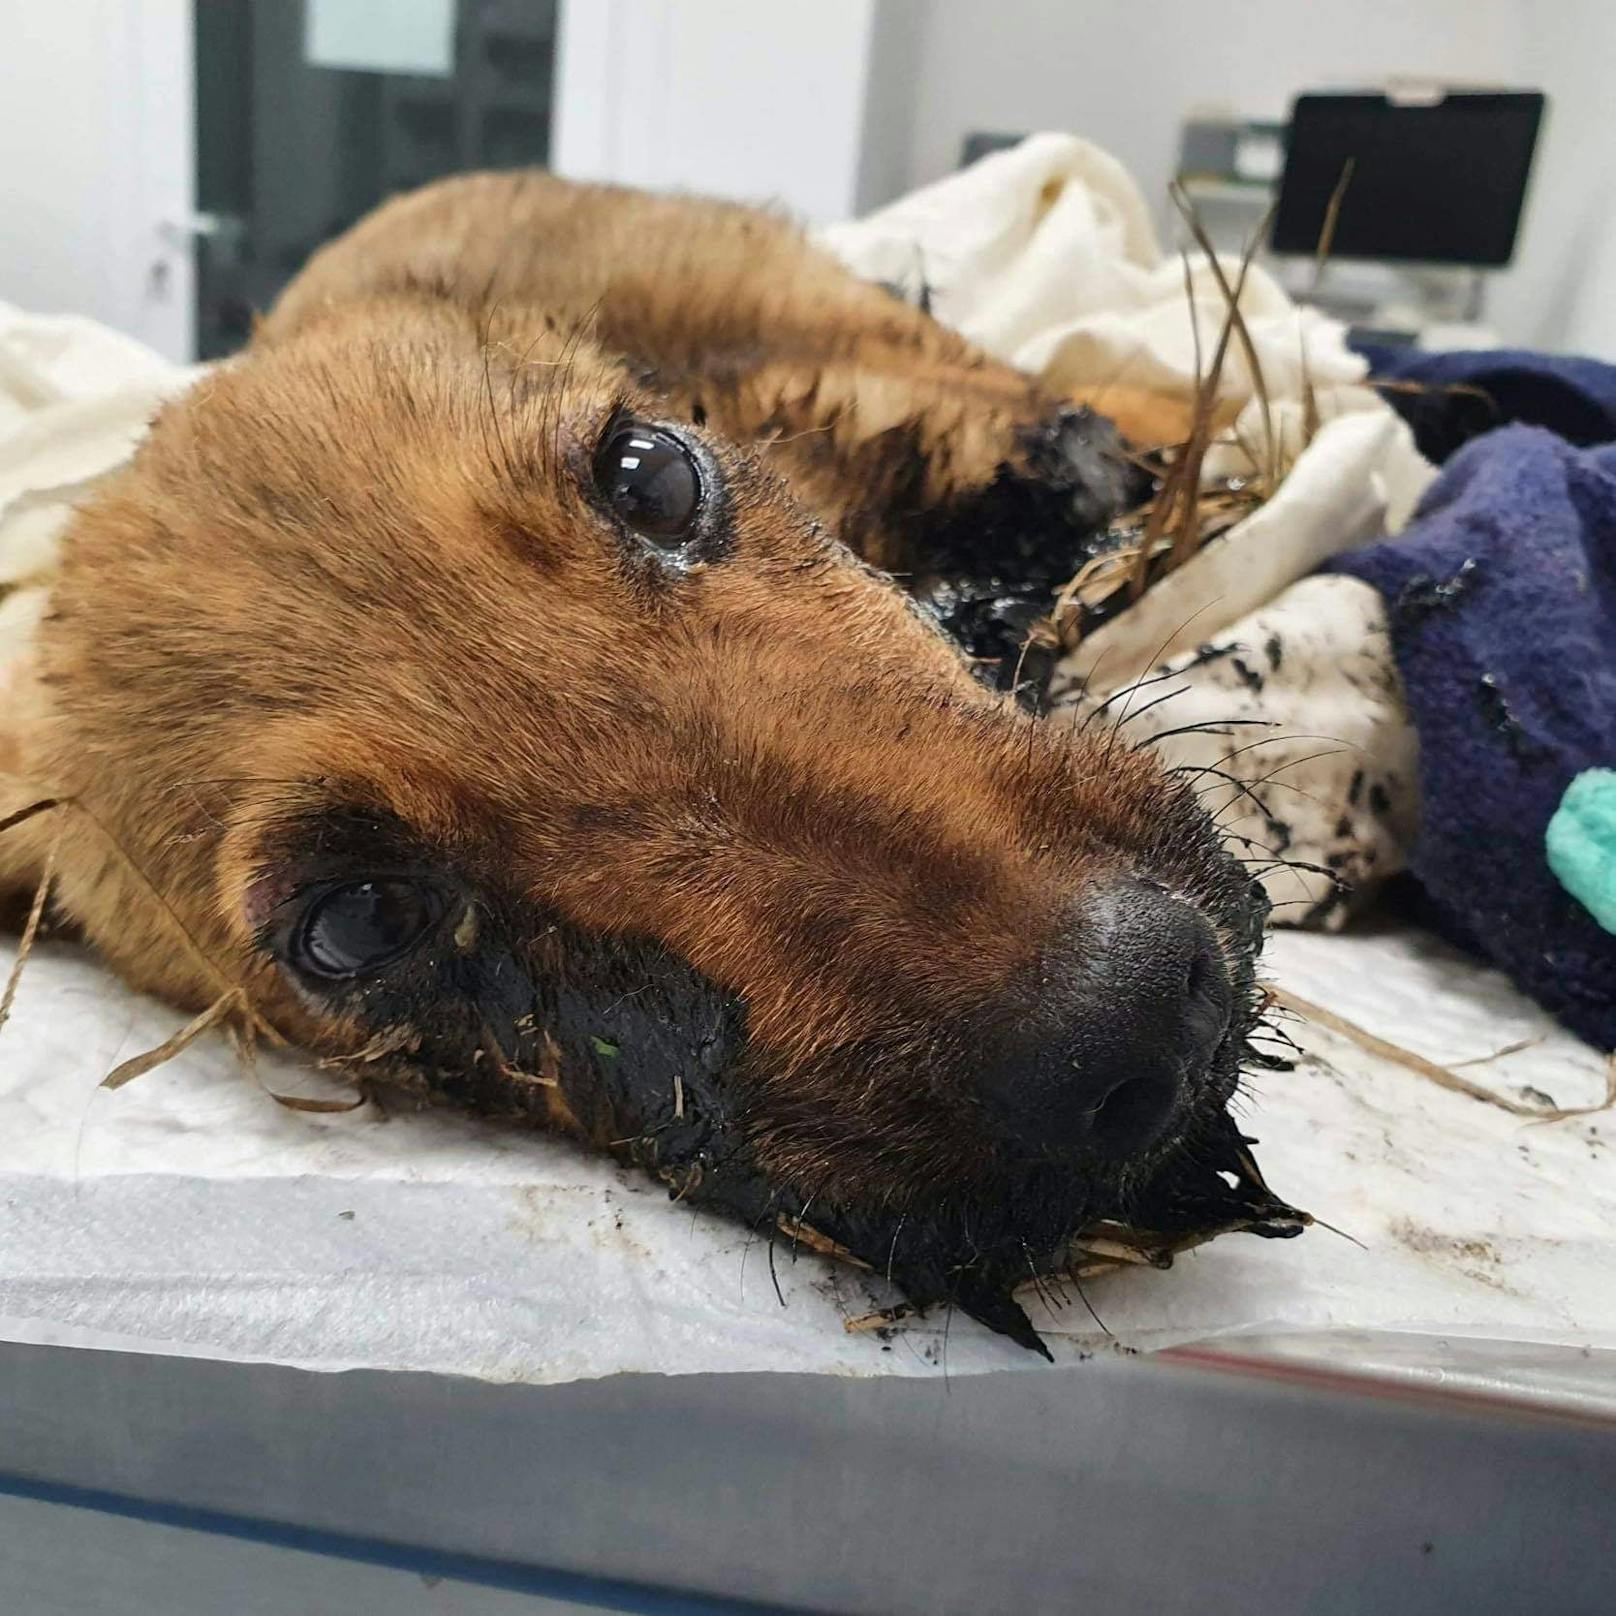 Grausamer Fall in Rumänien: Dieser Welpe wurde mit heißem Teer übergossen. Tierschützer kümmerten sich um den kleinen Buben. ---&gt;<a href="https://www.heute.at/s/strassenhund-mit-heissem-teer-uebergossen-100121333">ARTIKEL </a><br>